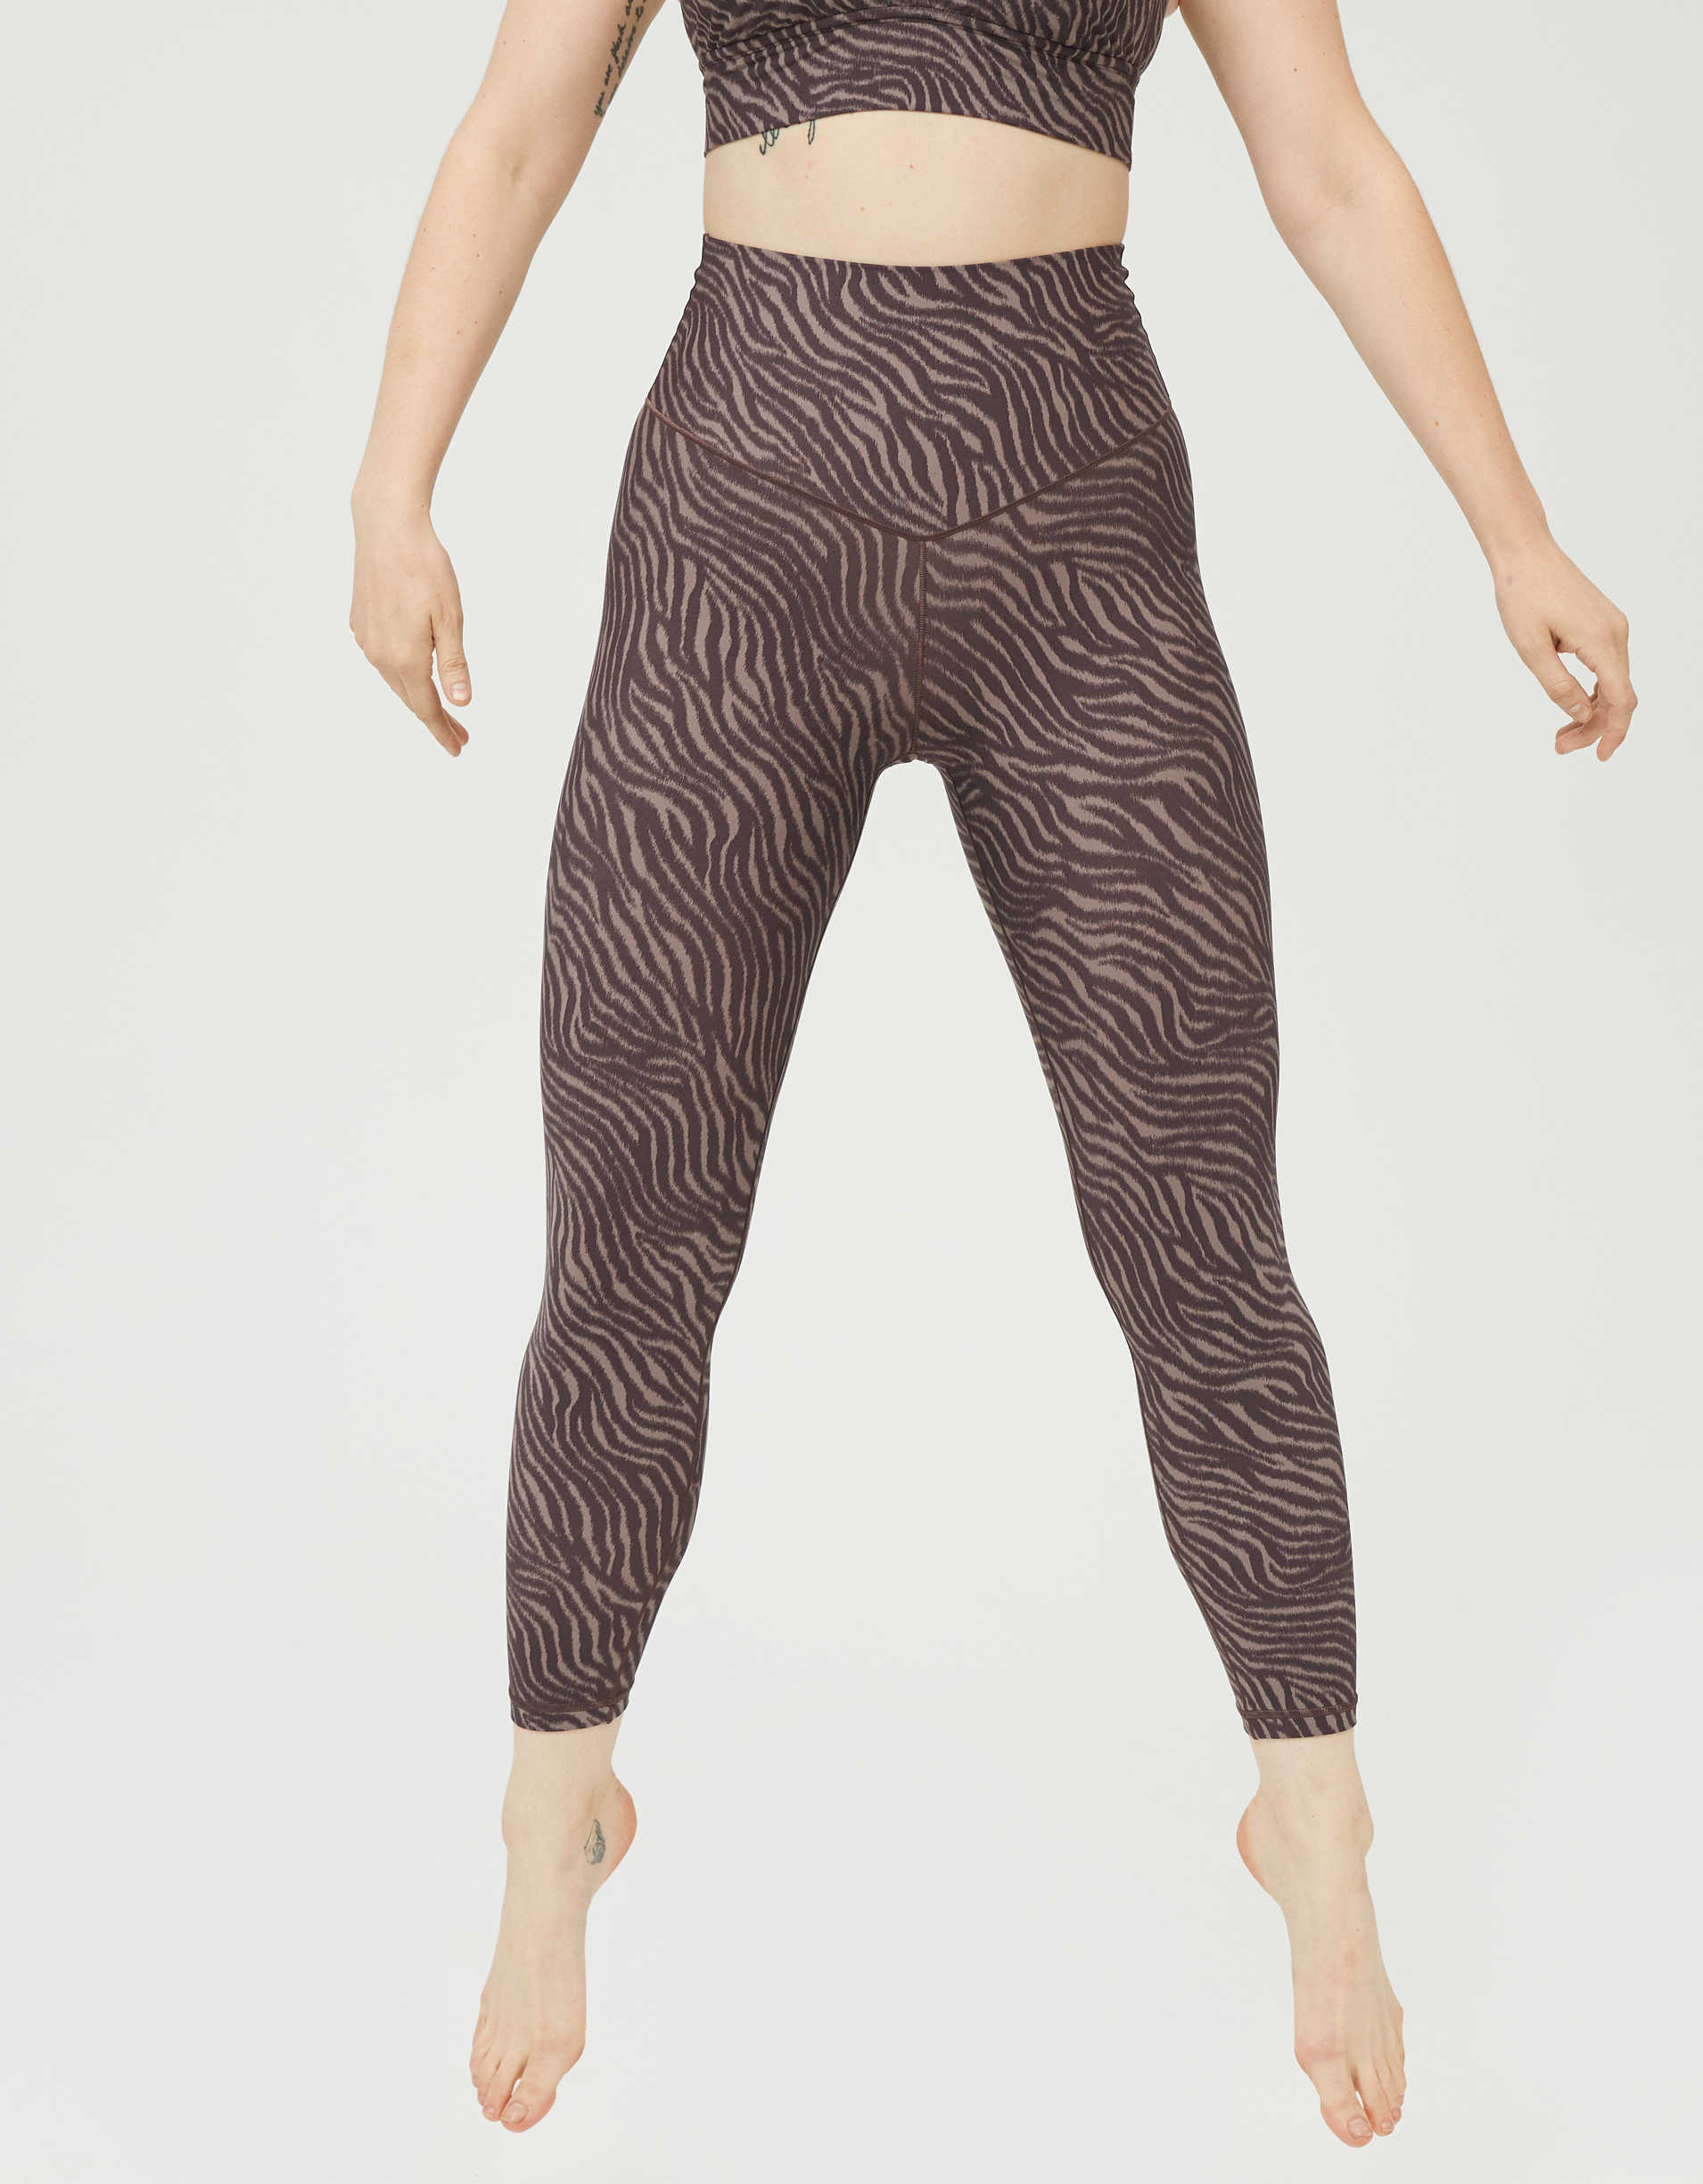 Aerie Offline Gloss High-waist Gray Leopard Animal Print Full Length Legging  L